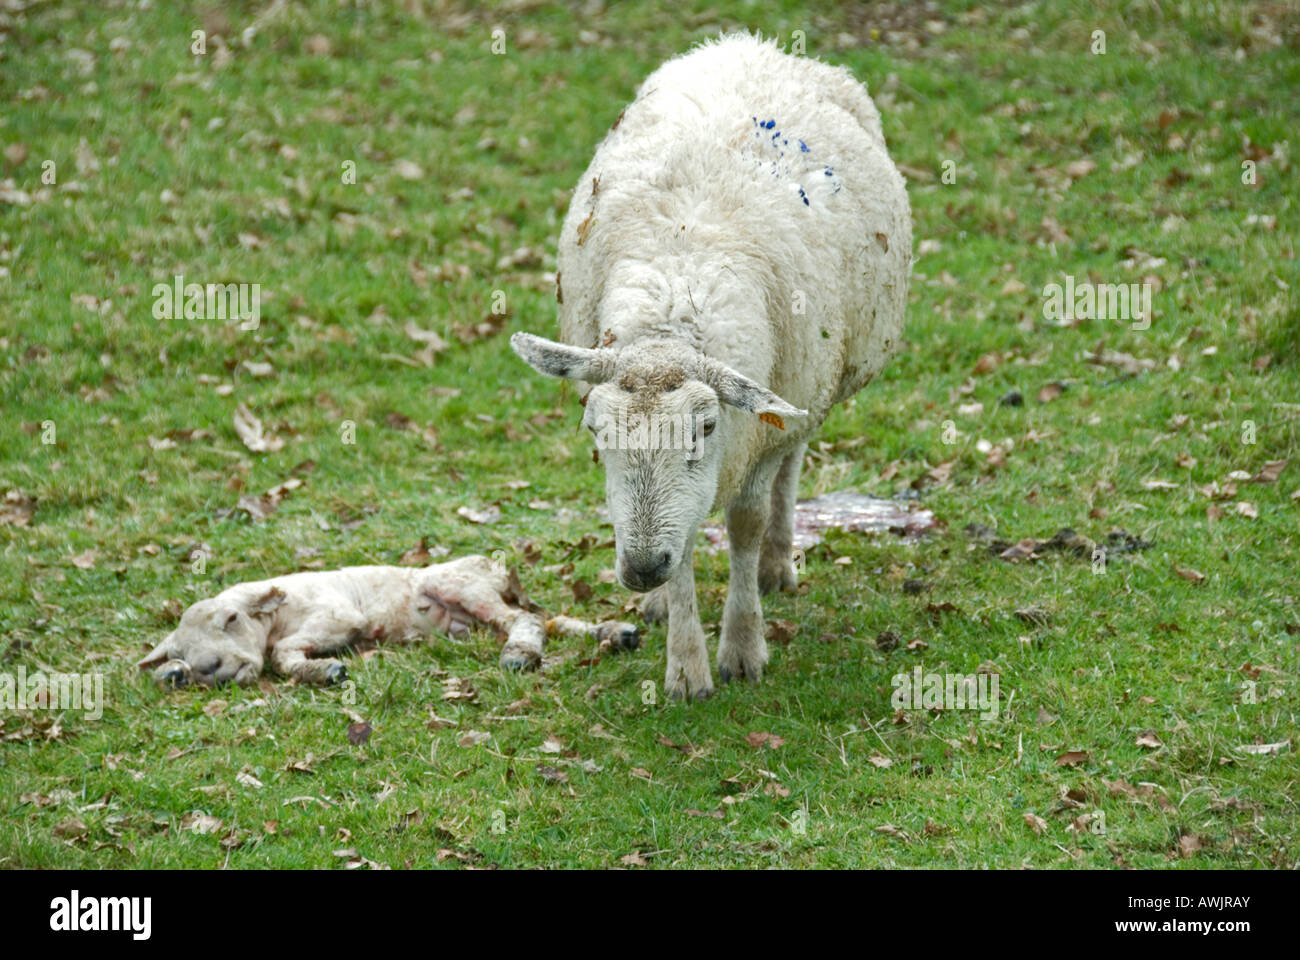 Stock Foto von einem Schaf neben ihr totes Lamm die Ewe hatte Probleme mit der Geburt und das Lamm war gestorben Stockfoto